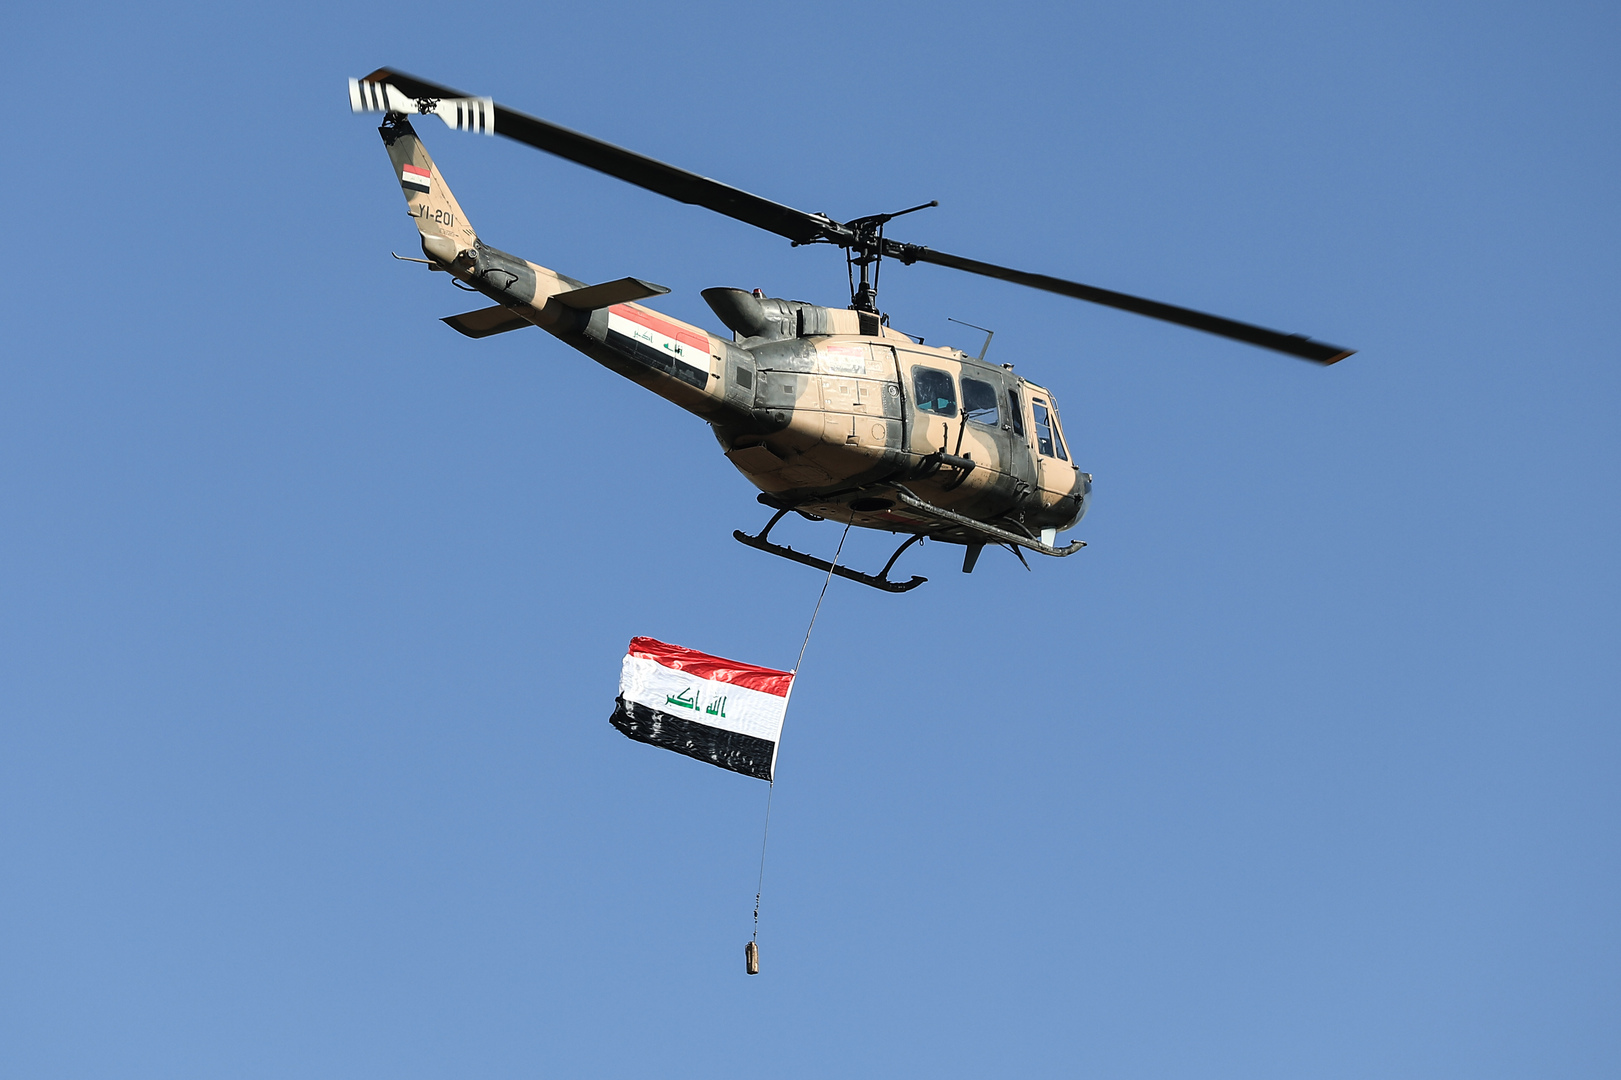 وزير الدفاع العراقي: قواتنا على أتم الاستعداد لانسحاب قوات التحالف والإمساك بالملف الأمني